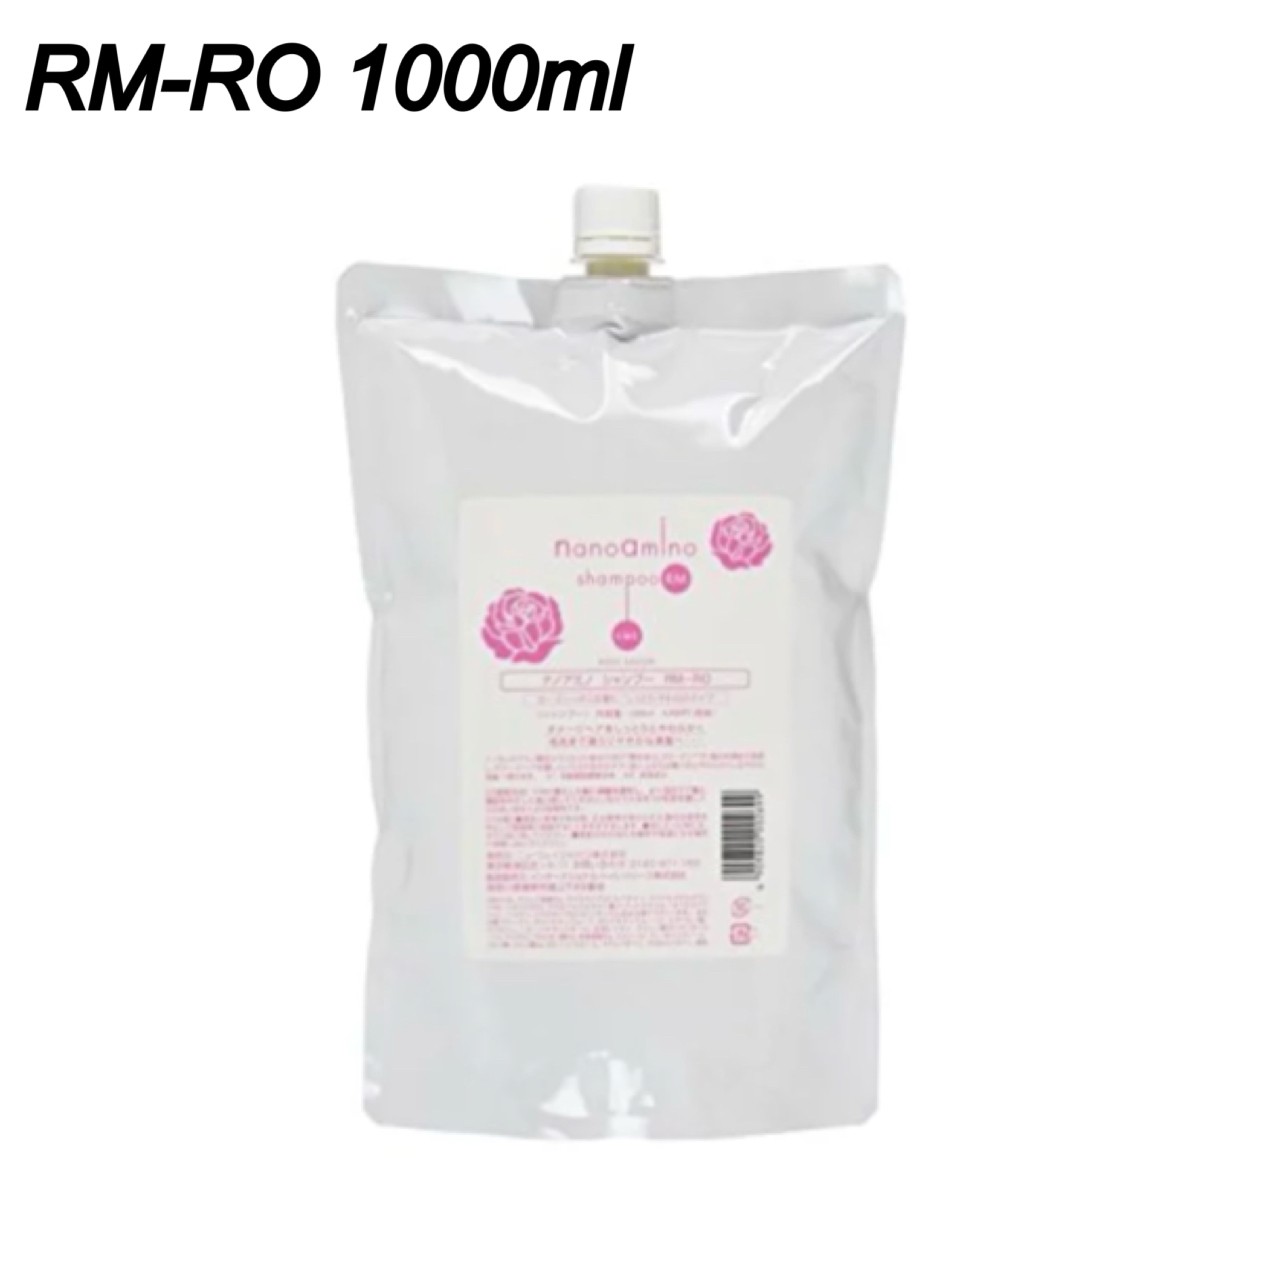 ニューウェイジャパン ナノアミノ シャンプー RM-RO ローズシャボンの香り 詰め替え リフィル 1000ml RM-RO1000 nanoamino neway